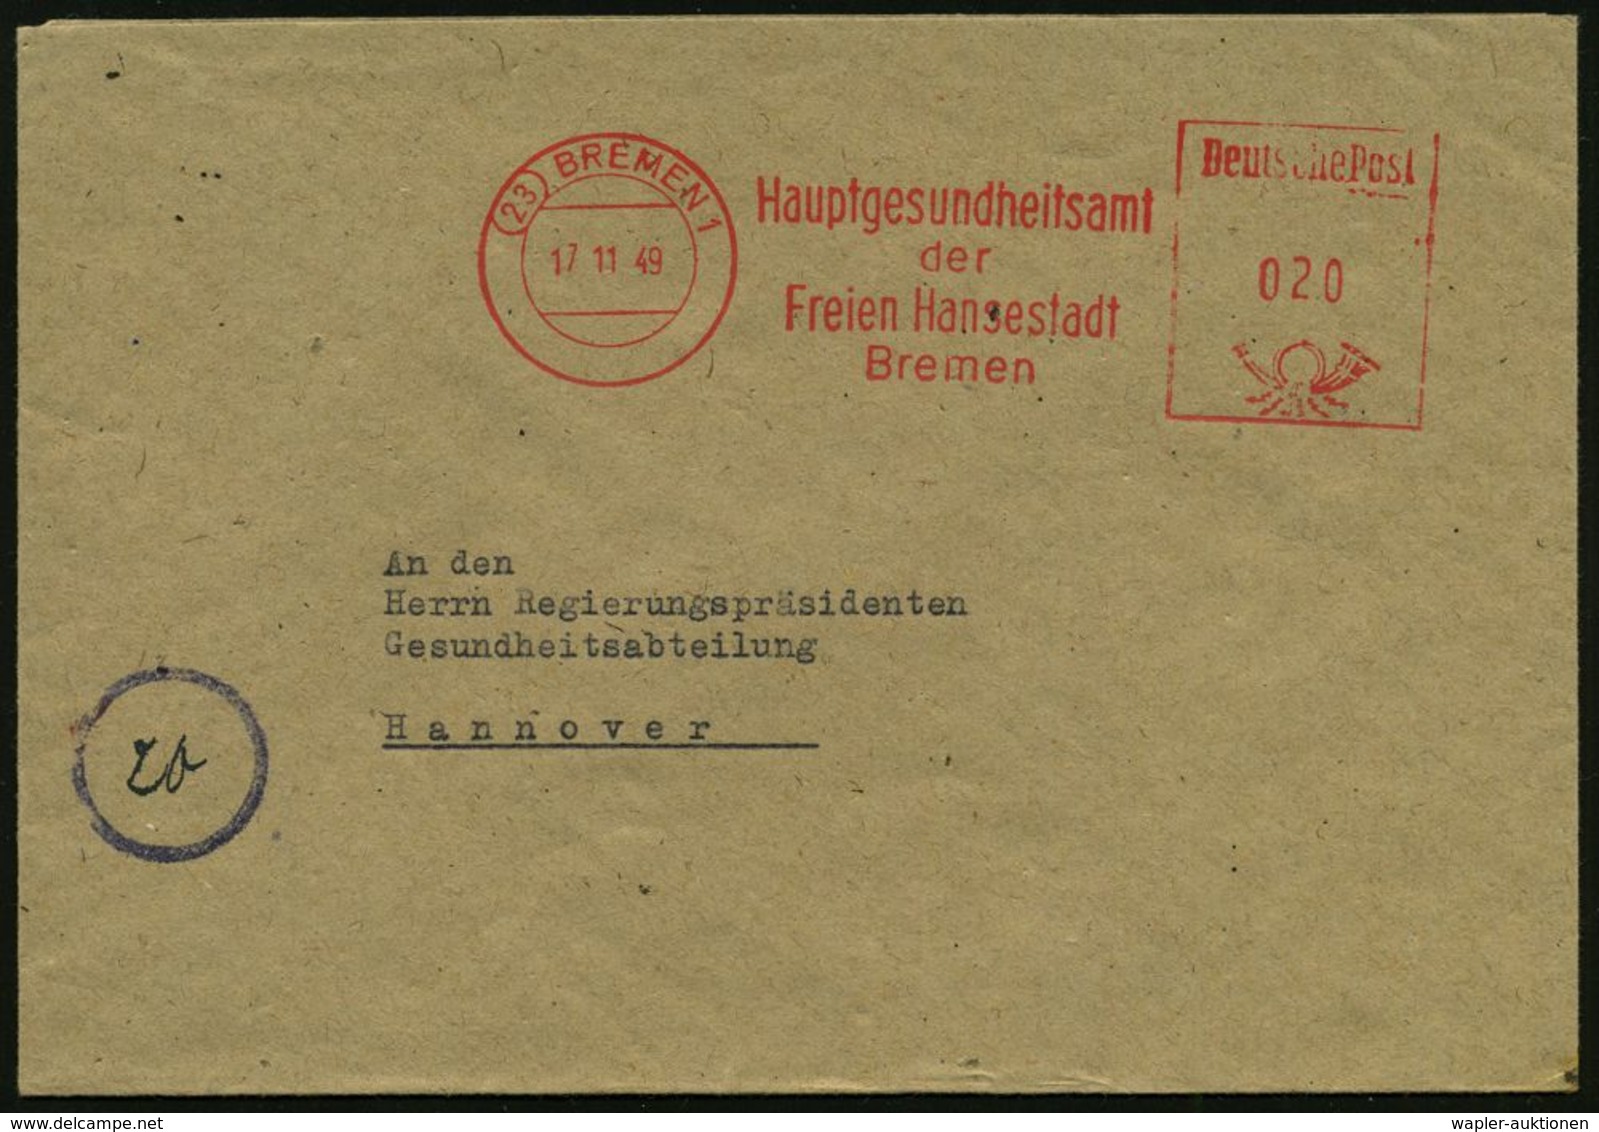 MEDIZINISCHE INSTITUTIONEN & INSTITUTE : (23) BREMEN 1/ Hauptgesundheitsamt/ Der/ Freien Hansestadt 1949 (17.11.) AFS ,  - Médecine